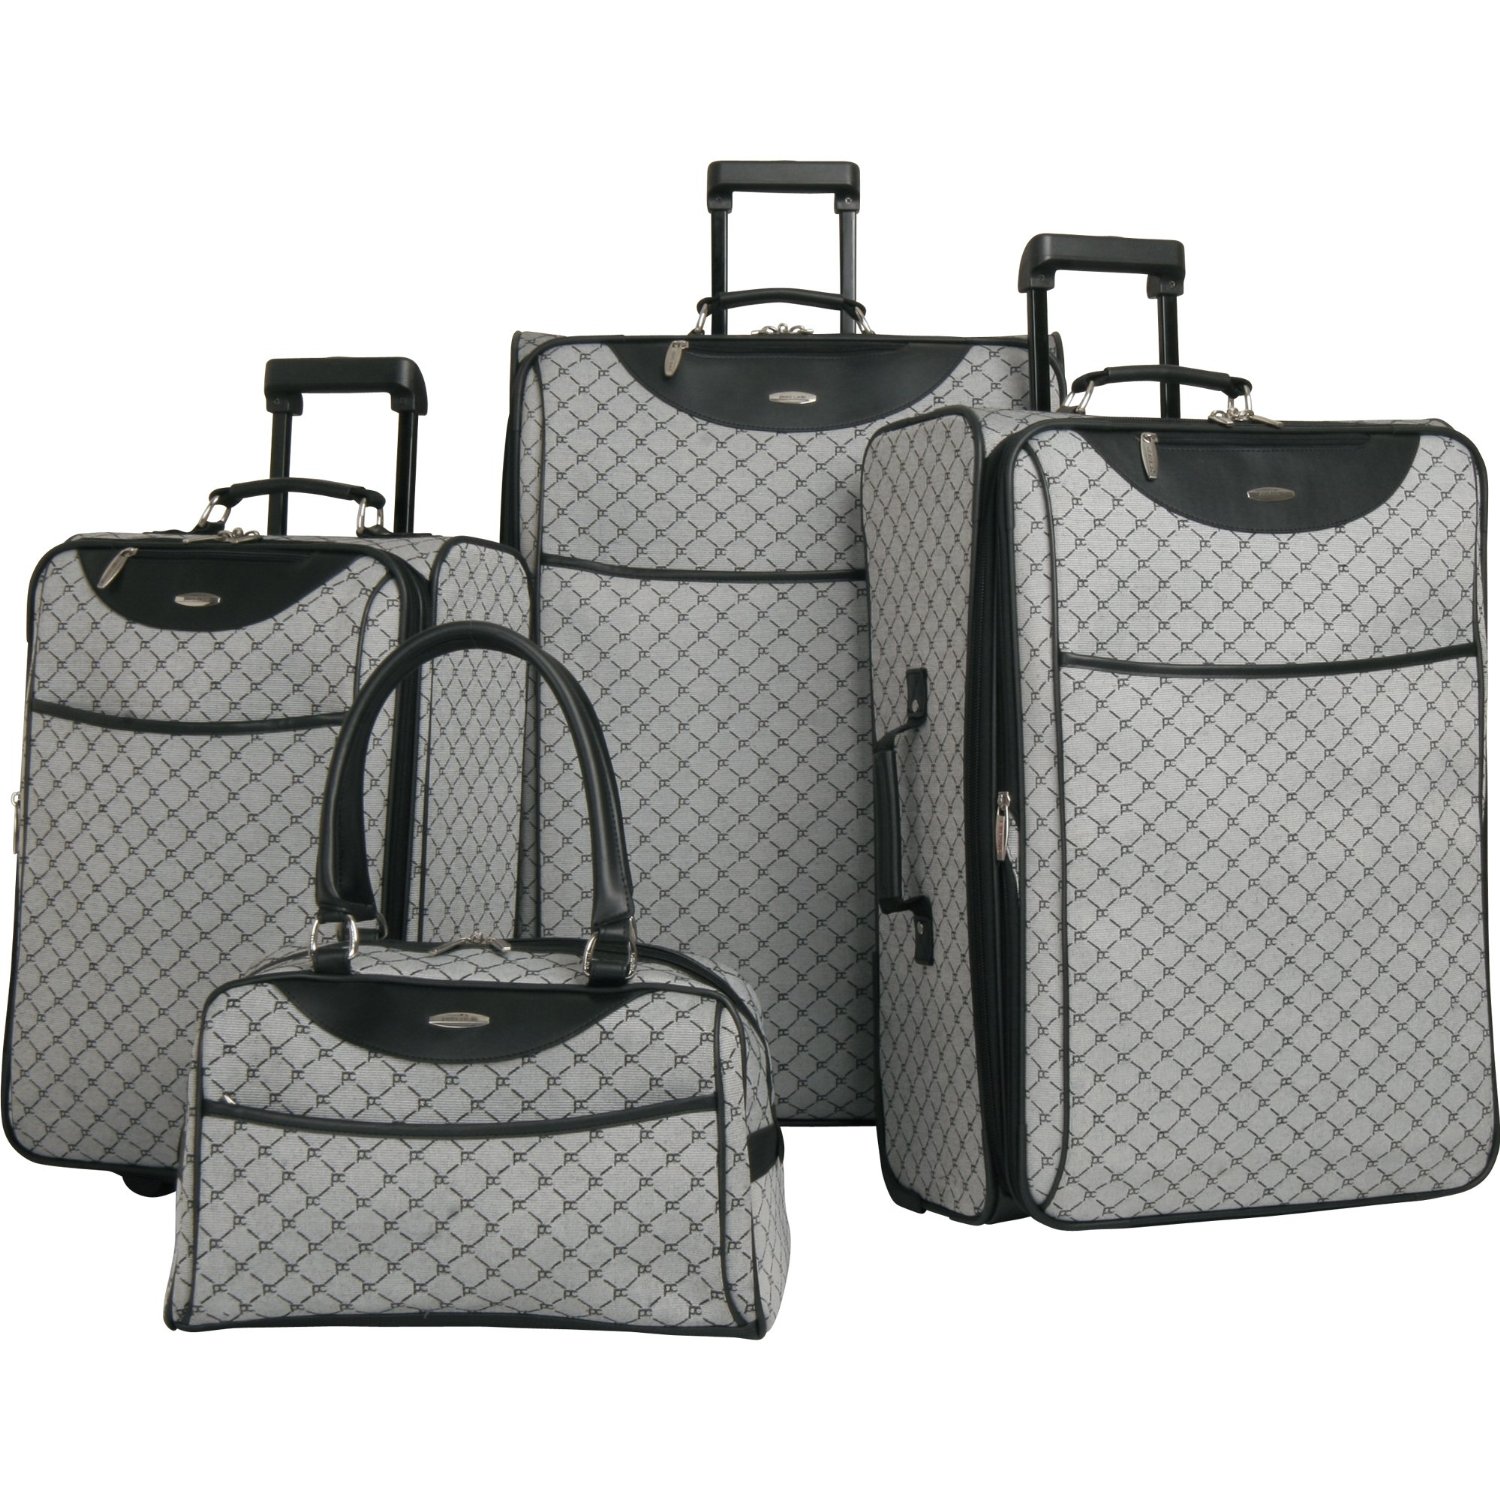 皮爾-卡丹 Pierre Cardin Luggage Pc Signature 經典款4件套行李箱 (灰色款)  $144.99 